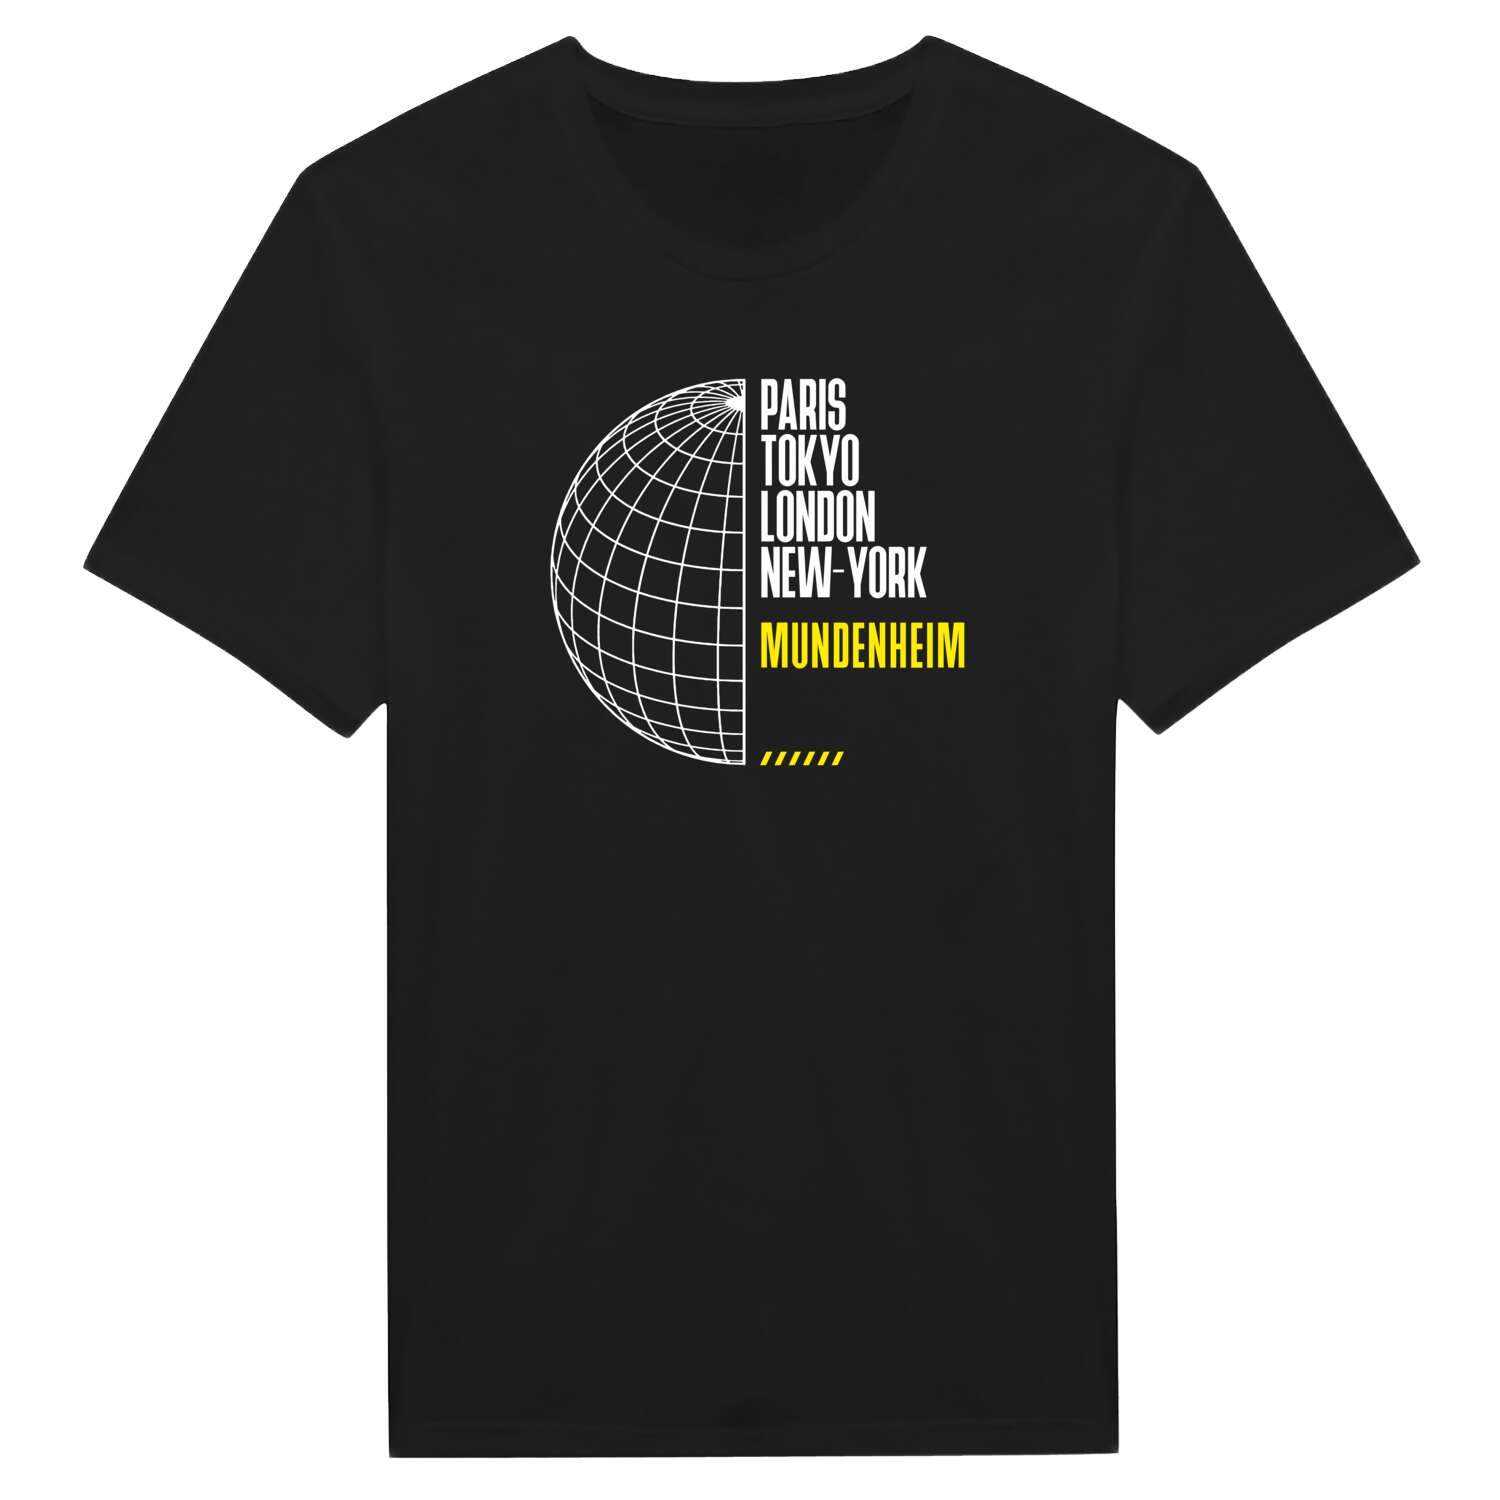 Mundenheim T-Shirt »Paris Tokyo London«